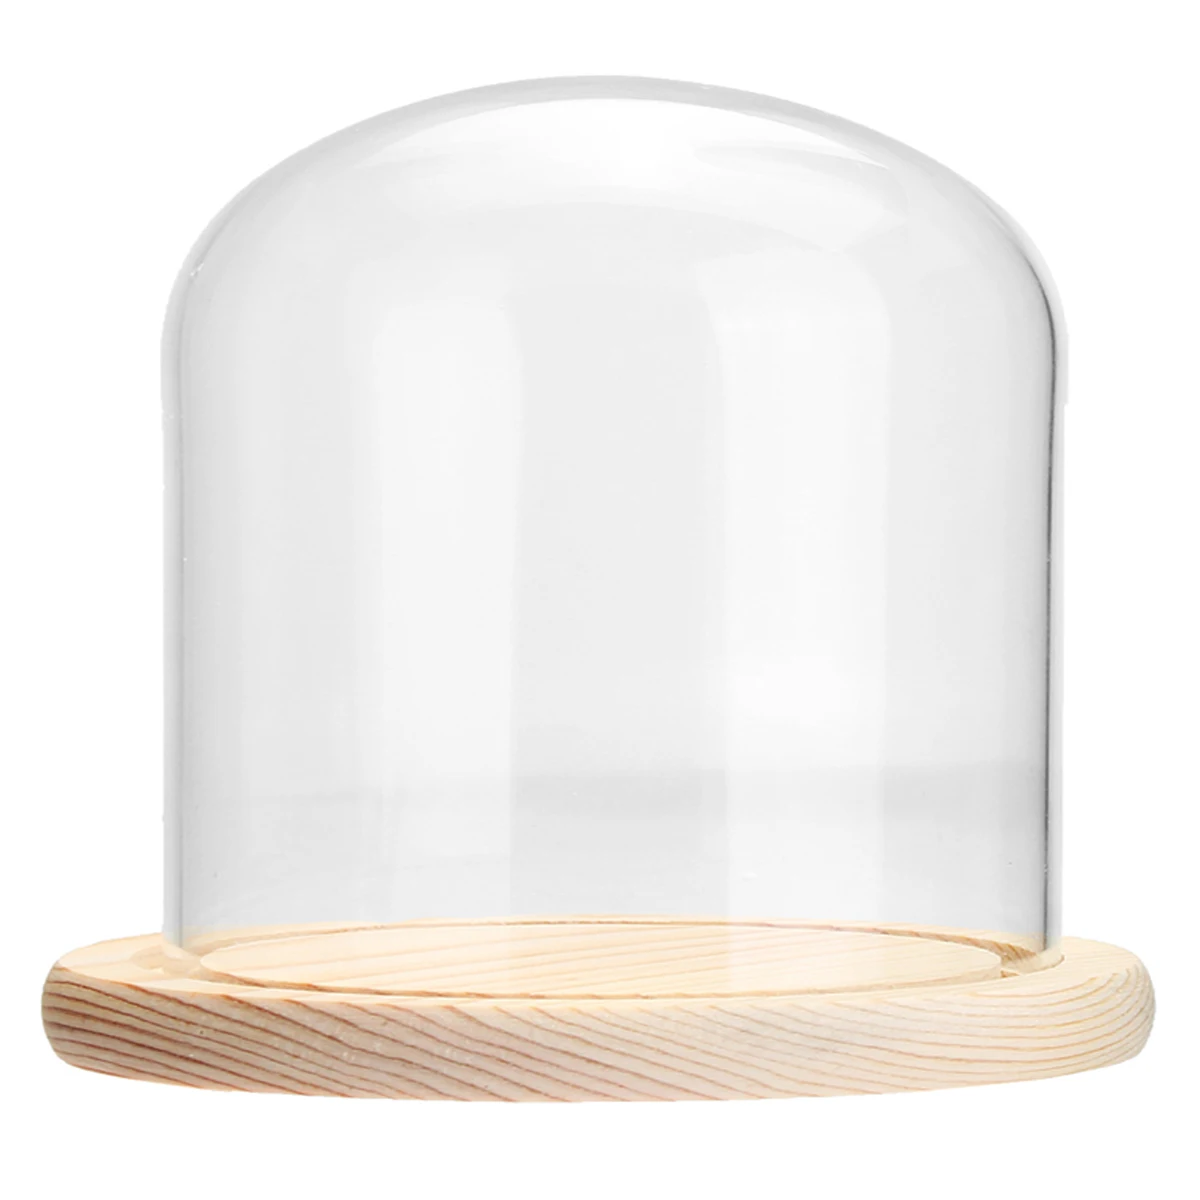 Прозрачная стеклянная купольная баночка-колокольчик с деревянным основанием со